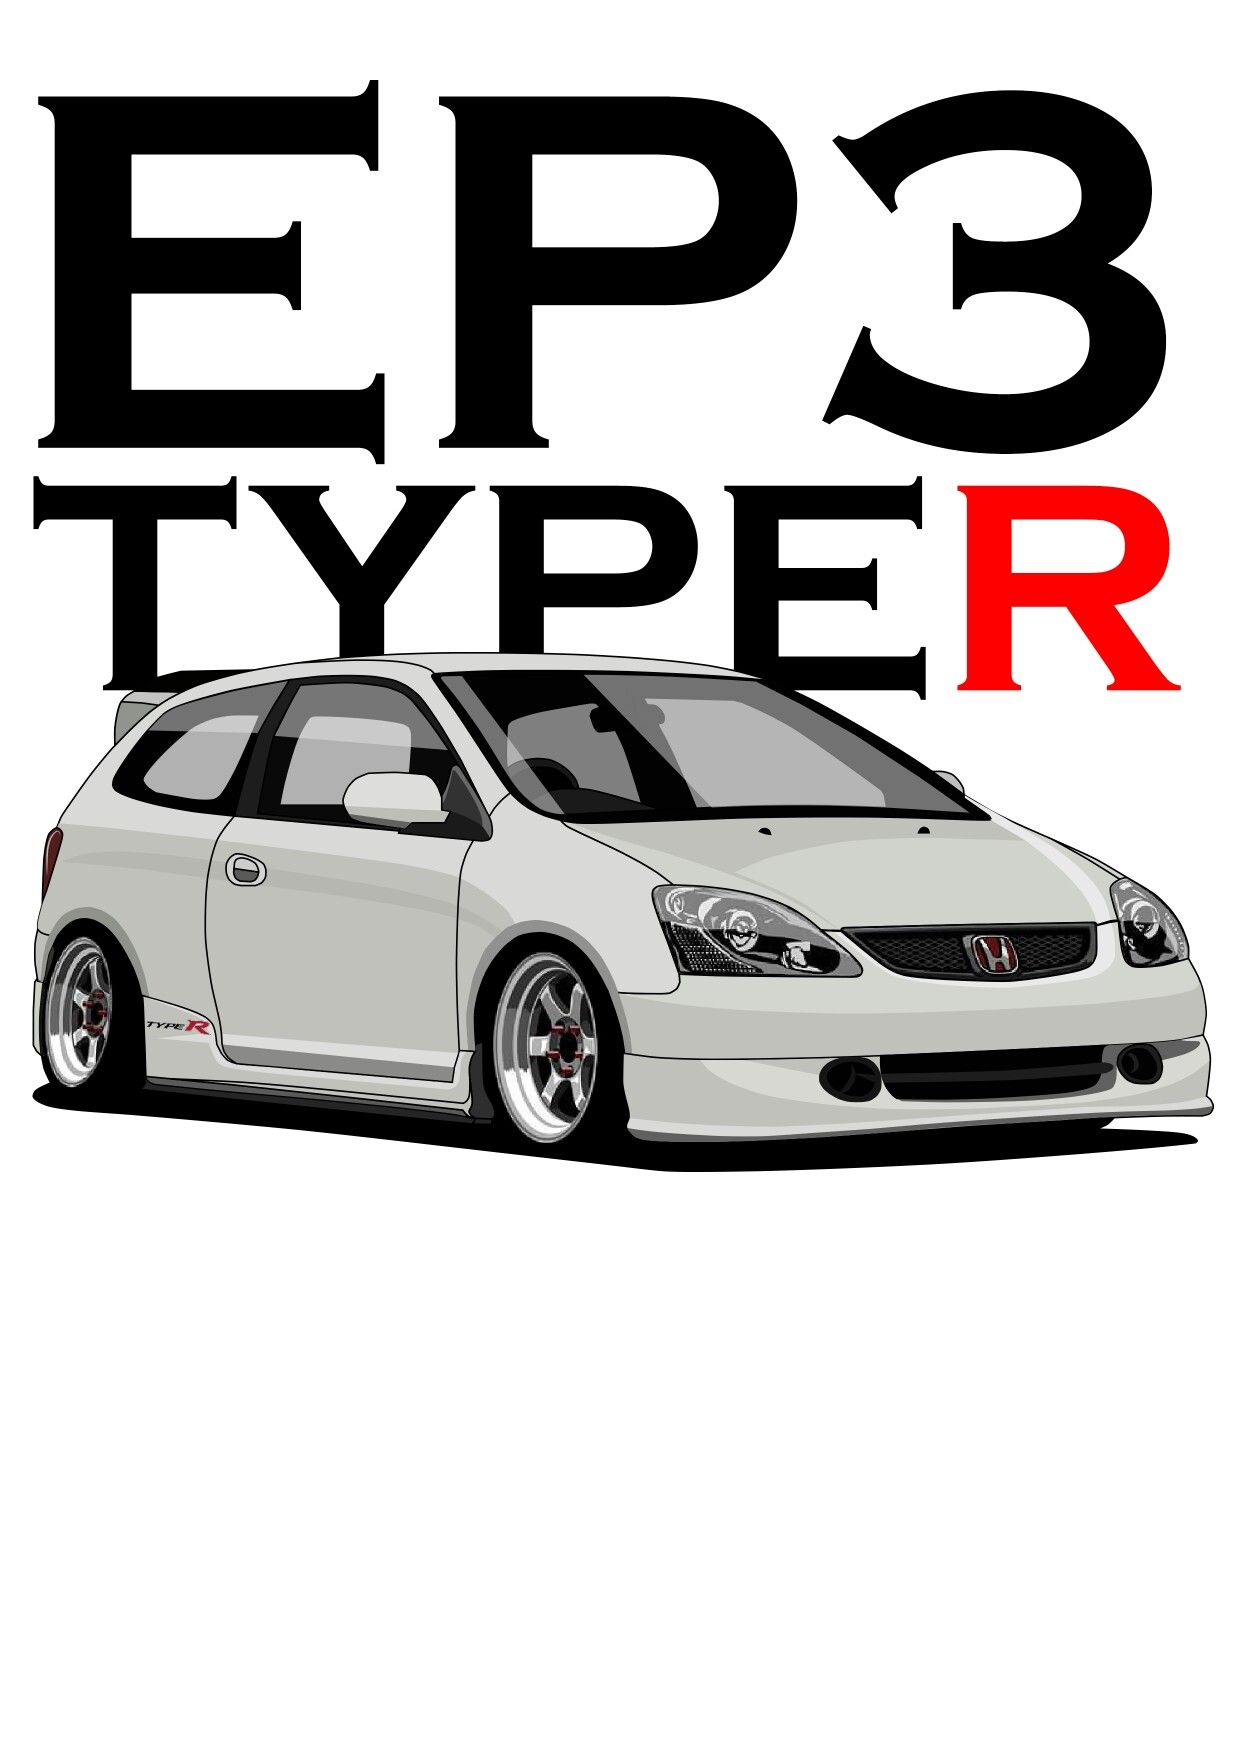 honda #civic #ep3 #typeR. Honda civic vtec, Honda civic hatchback, Honda civic